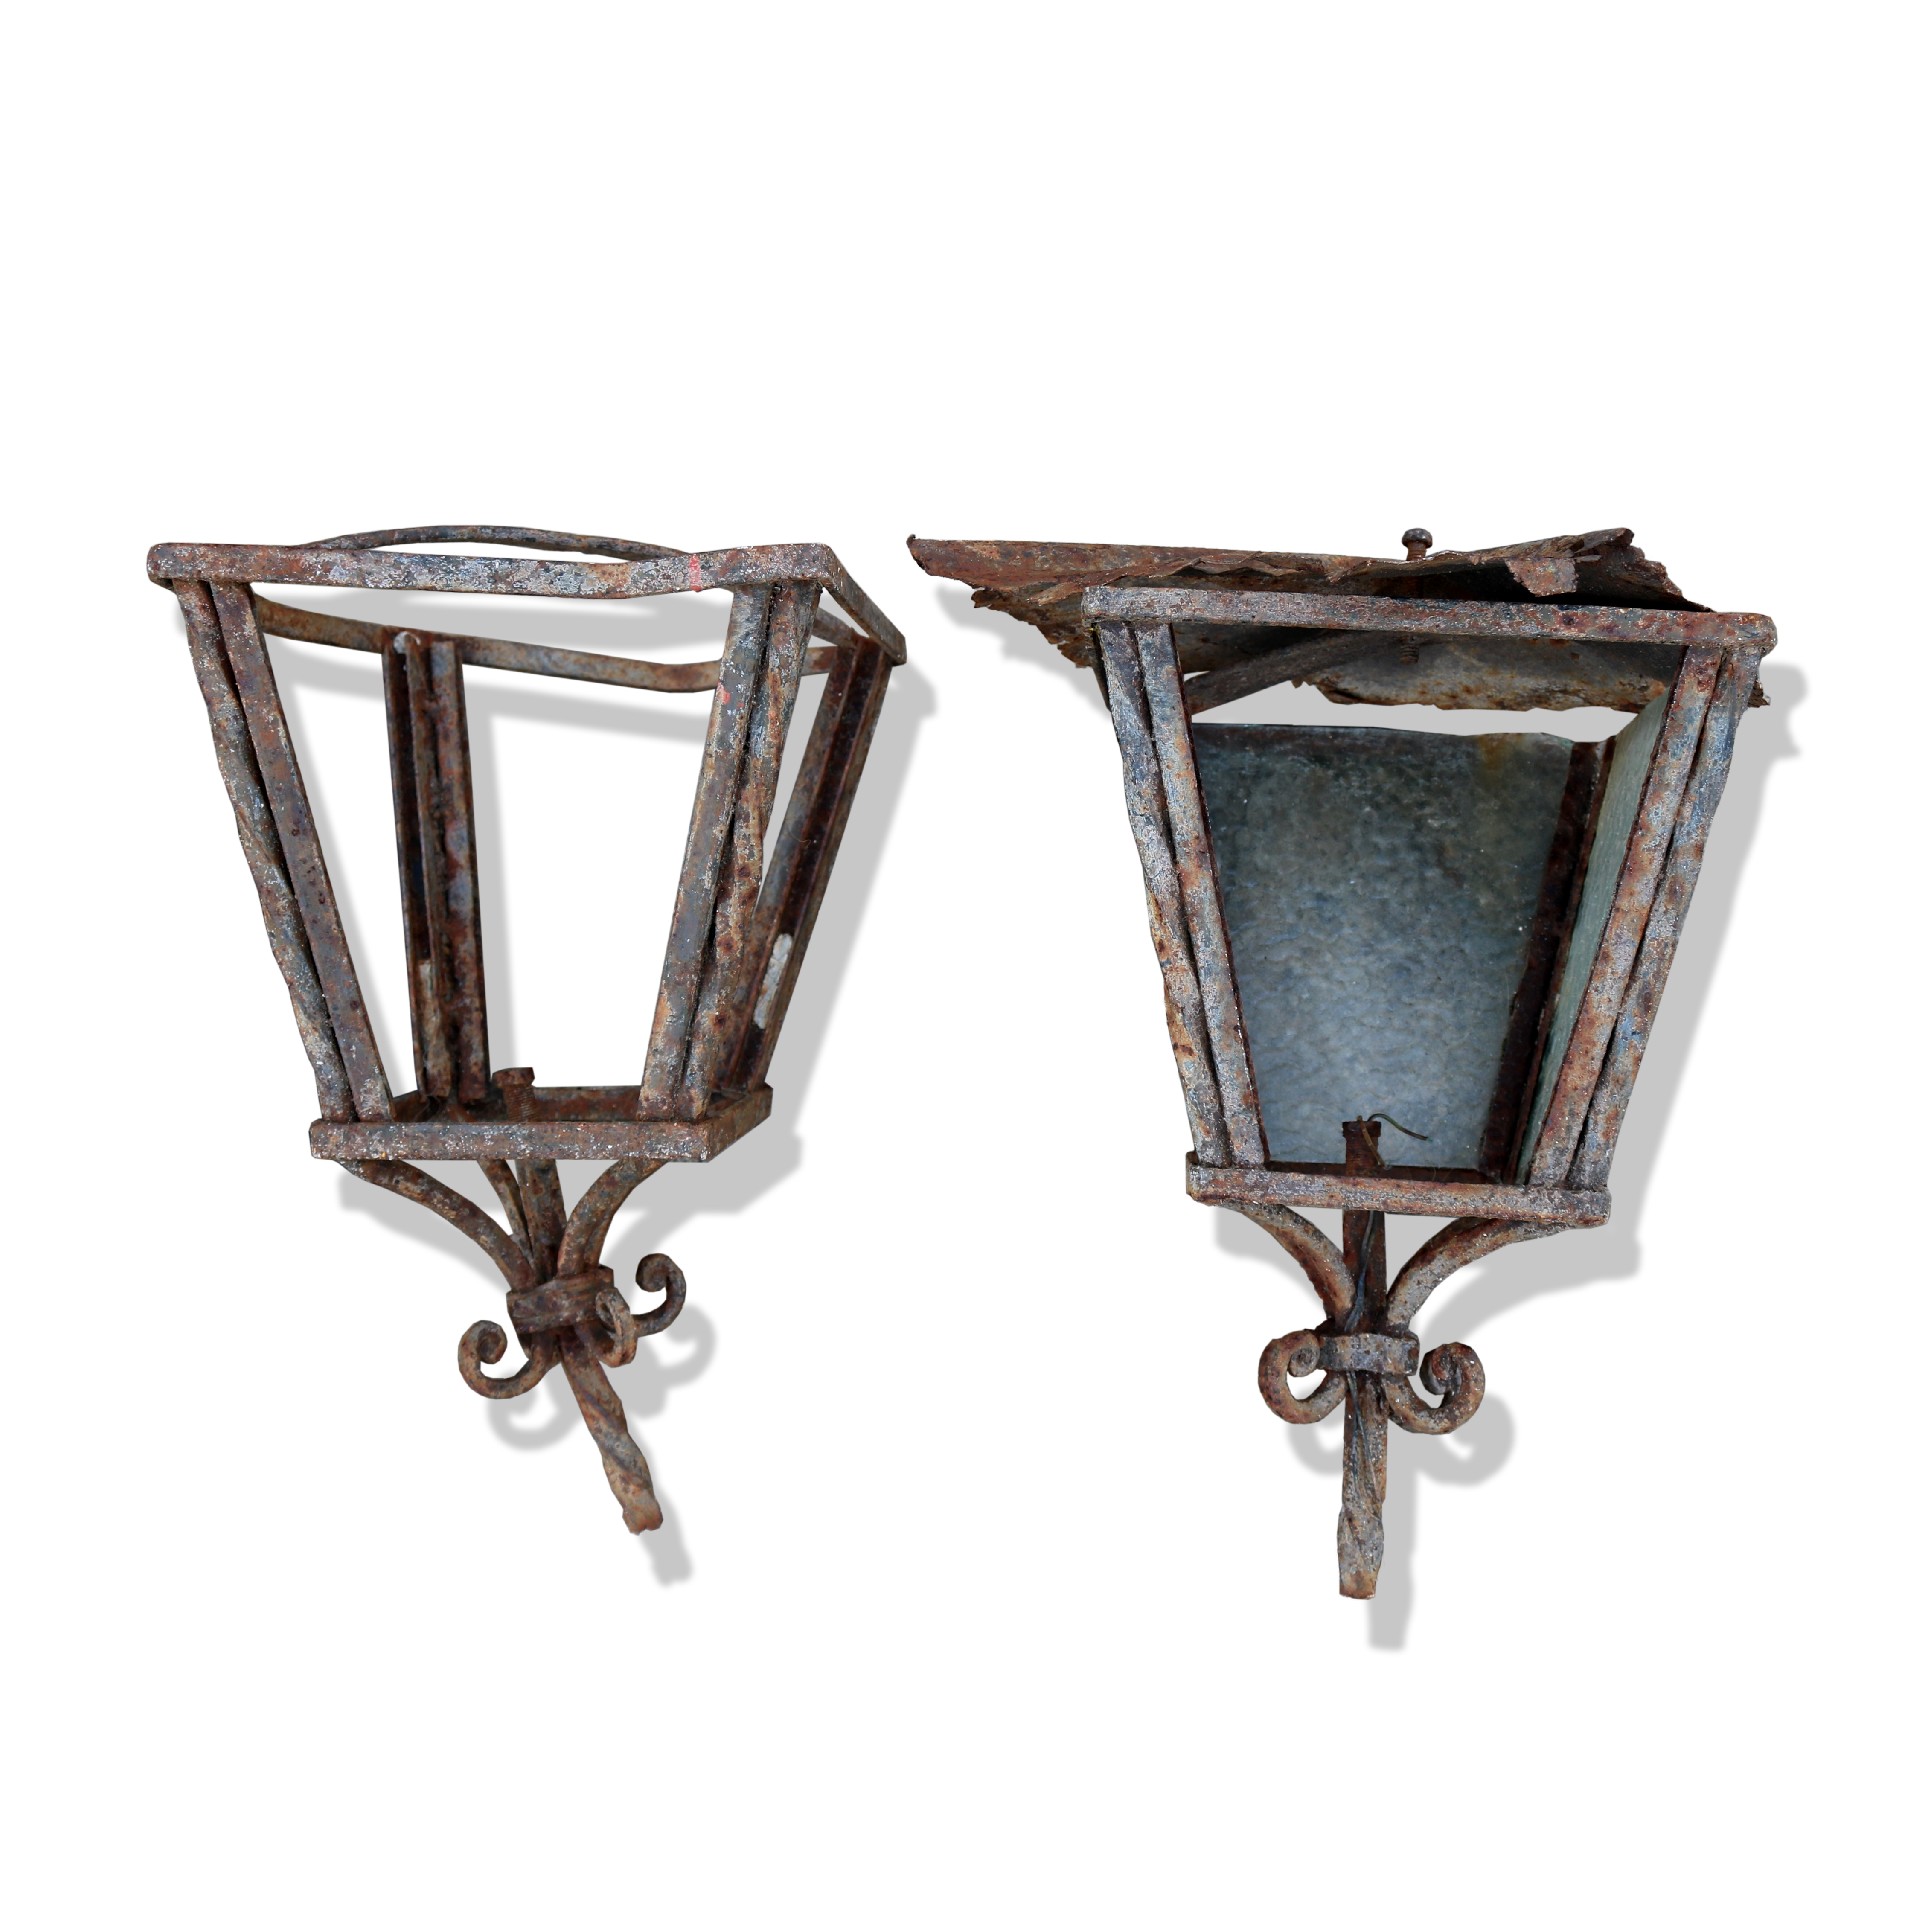 Coppia di lanterne antiche in ferro.  - Lampioni Antichi - Arredo Giardino - Prodotti - Antichità Fiorillo